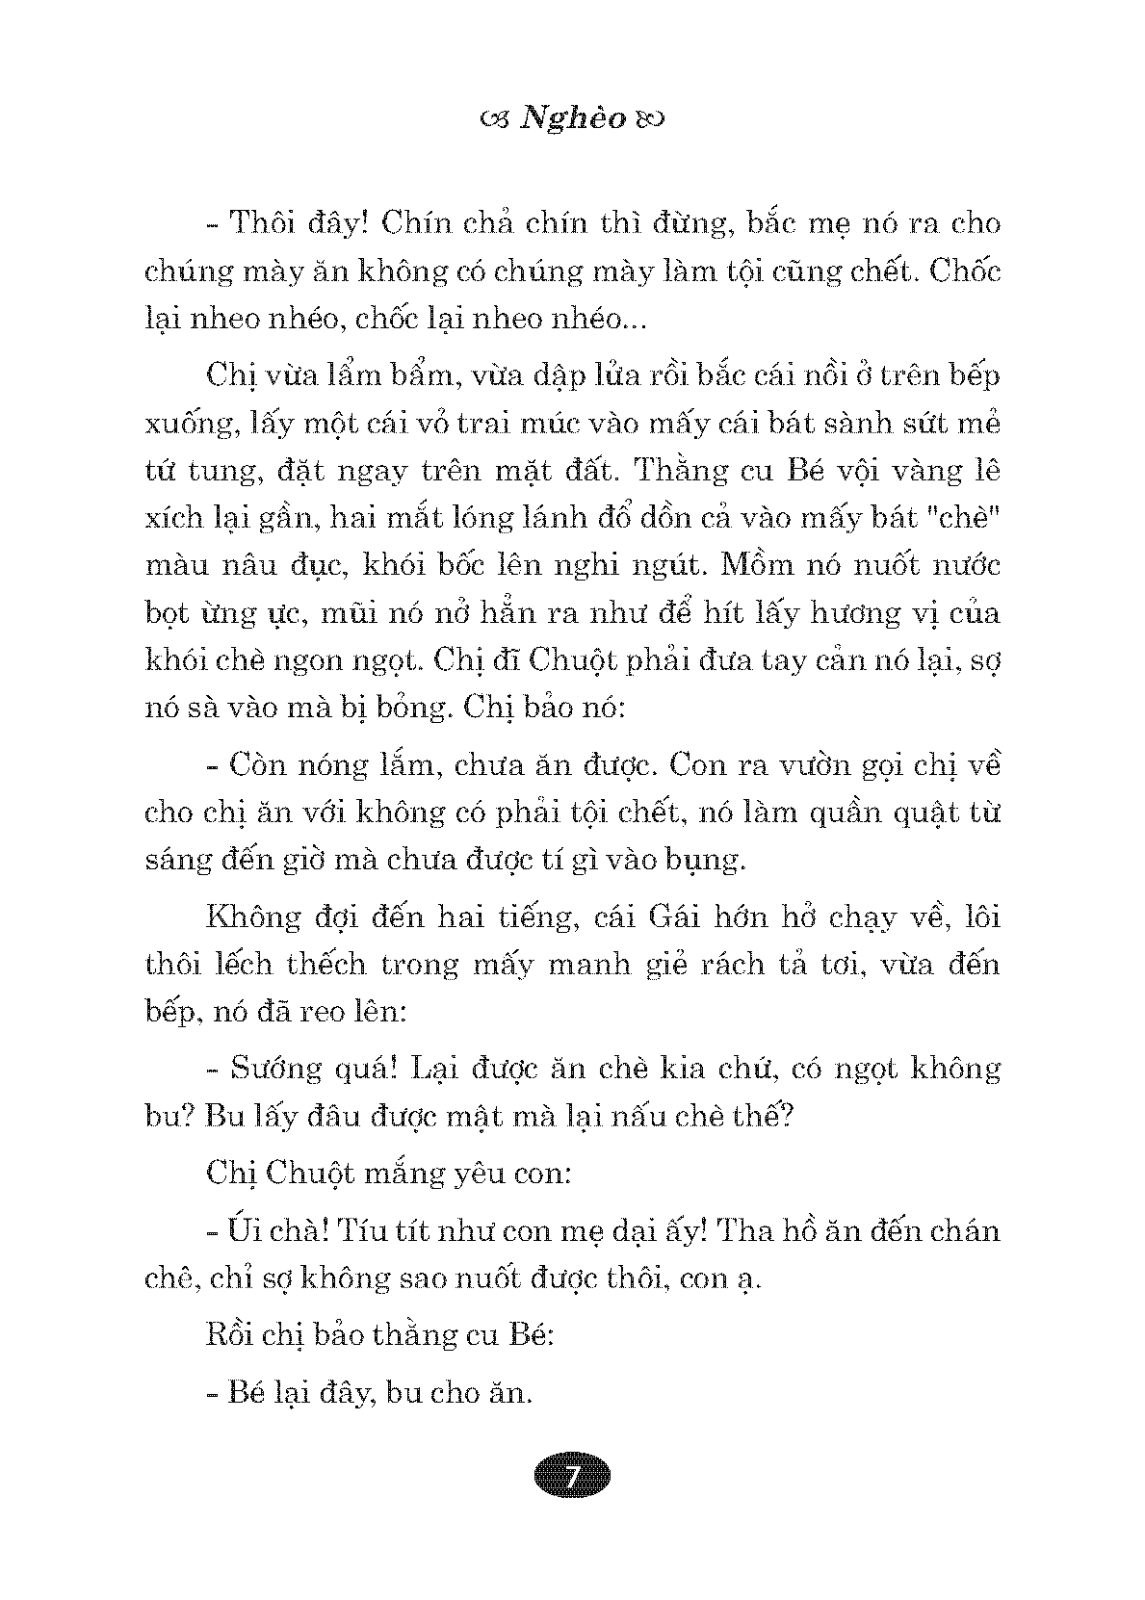 Danh Tác Văn Học Việt Nam - Chí Phèo PDF